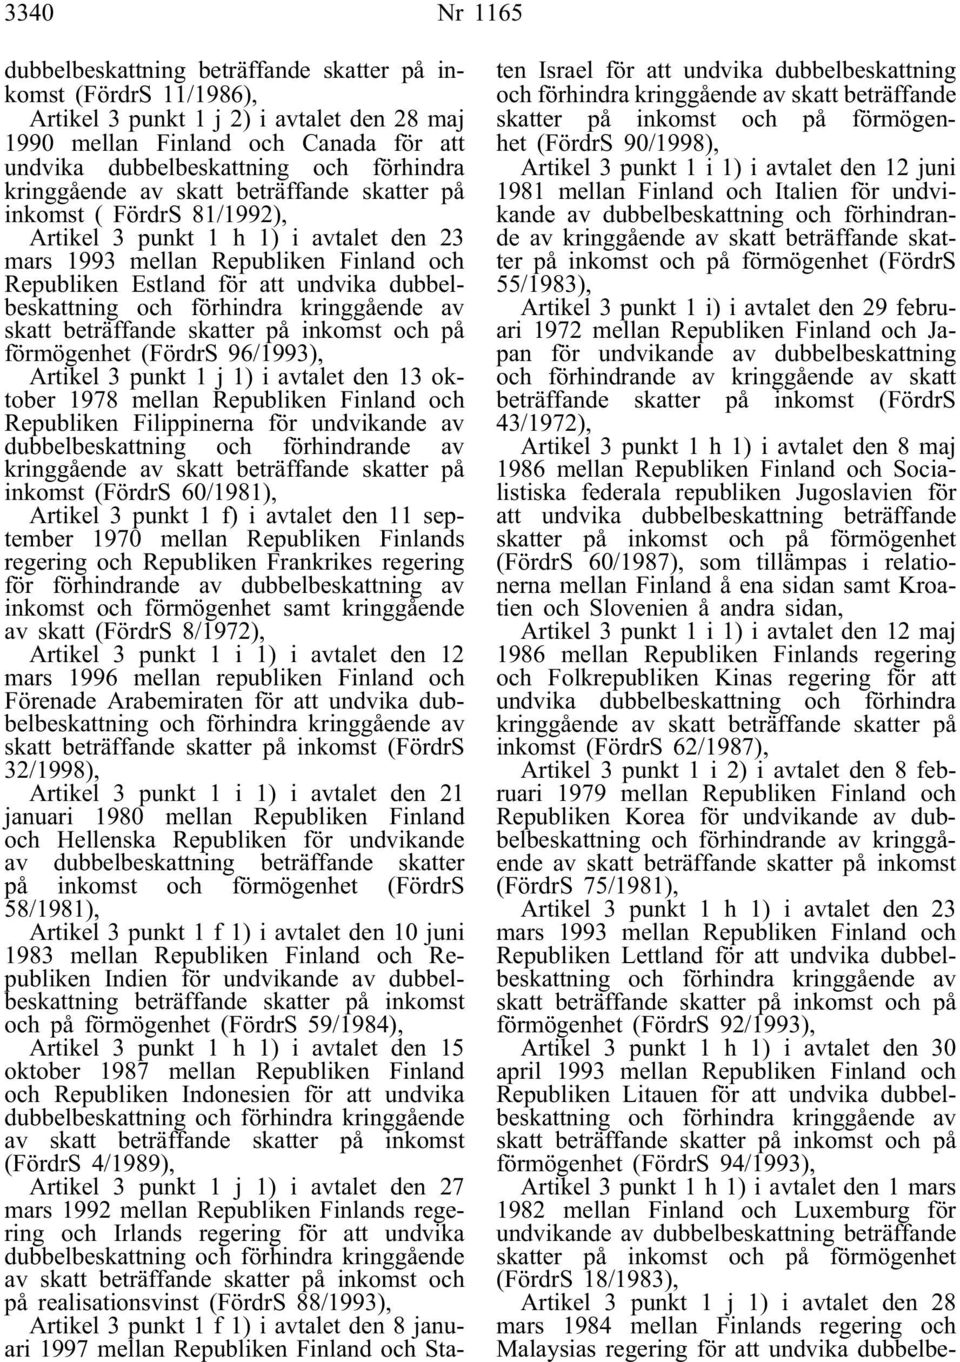 dubbelbeskattning och förhindra kringgående av skatt beträffande skatter på inkomst och på förmögenhet (FördrS 96/1993), Artikel 3 punkt 1 j 1)i avtalet den 13 oktober 1978 mellan Republiken Finland